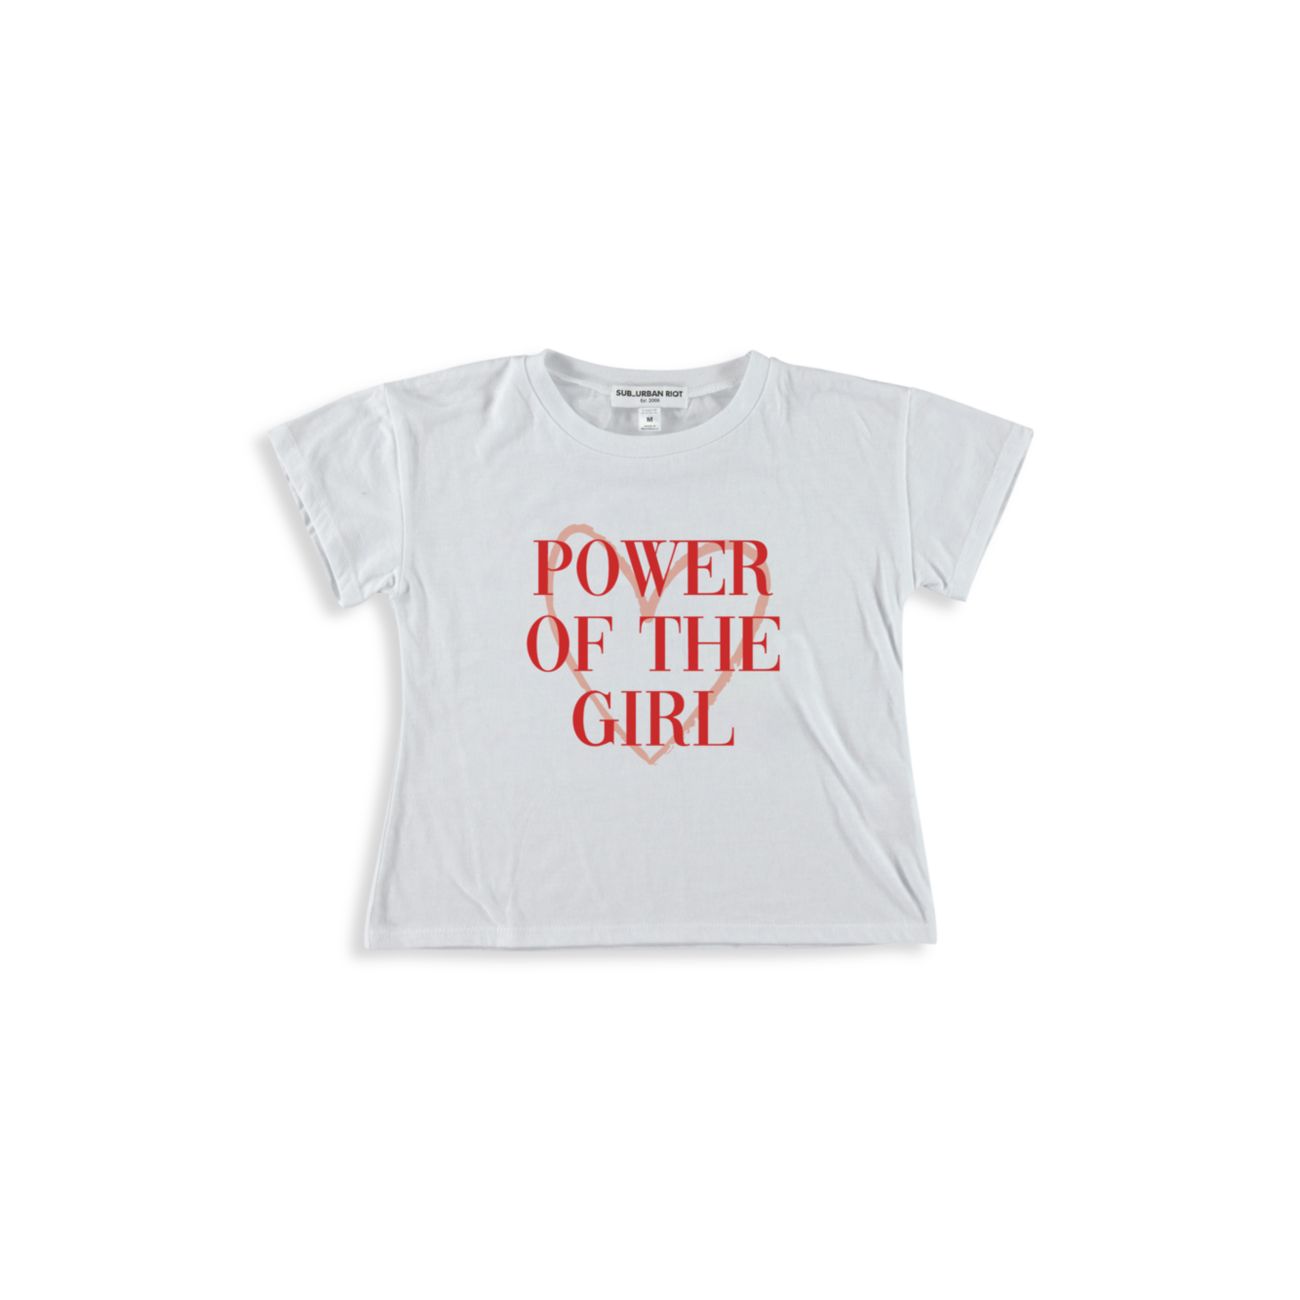 Укороченная футболка для девочек "Power Of The Girl" Suburban Riot